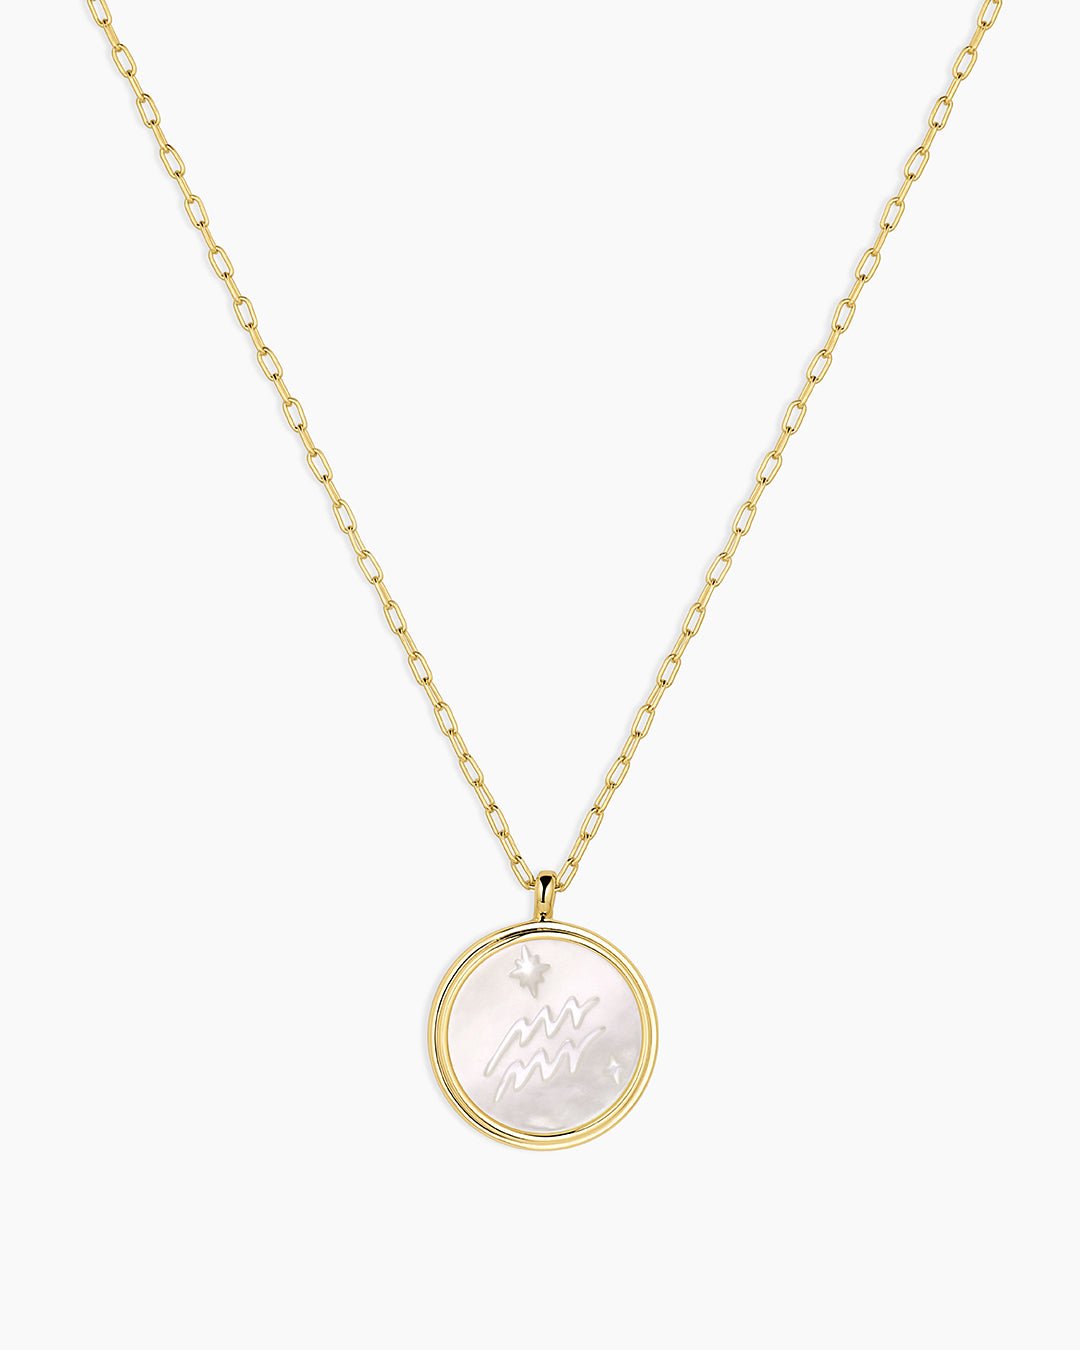 Zodiac Necklace - Aquarius, Astrology Coin Necklace, Aquarius Necklace || option::Gold Plated, Aquarius